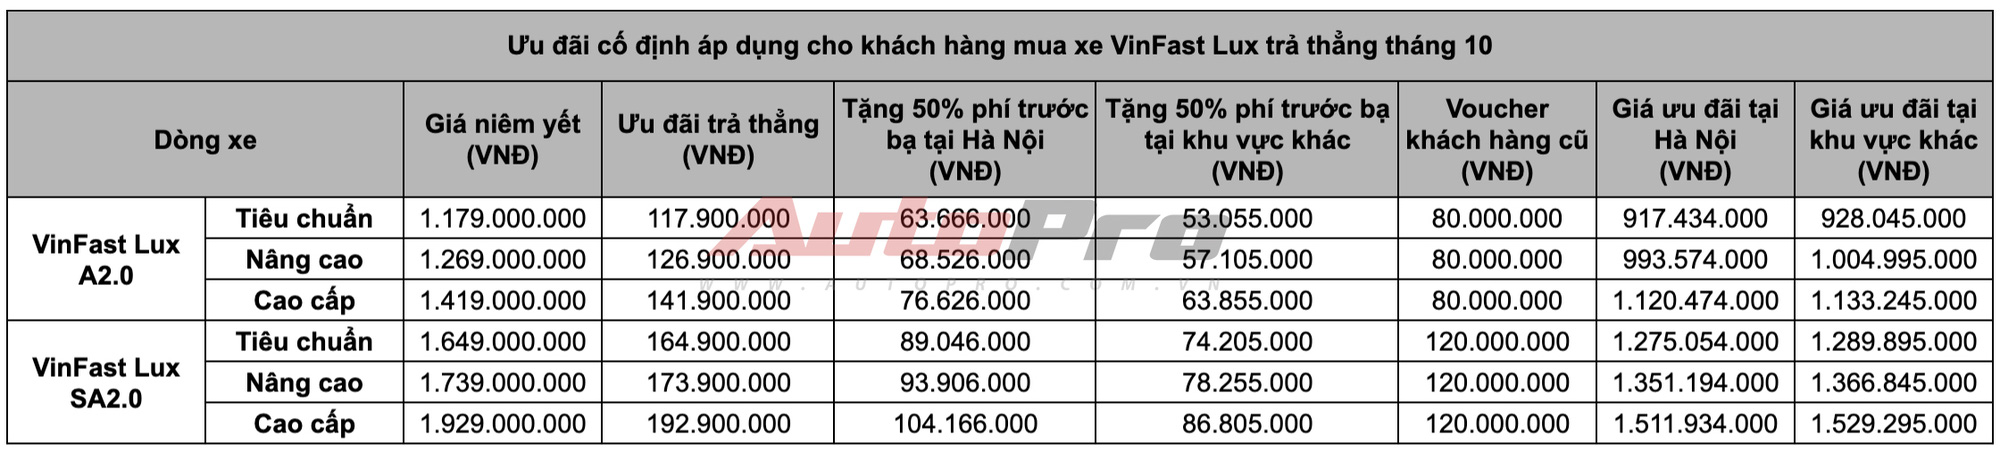 Những điều kiện lý tưởng để mua xe VinFast rẻ như quảng cáo: Khó cho số đông - Ảnh 4.